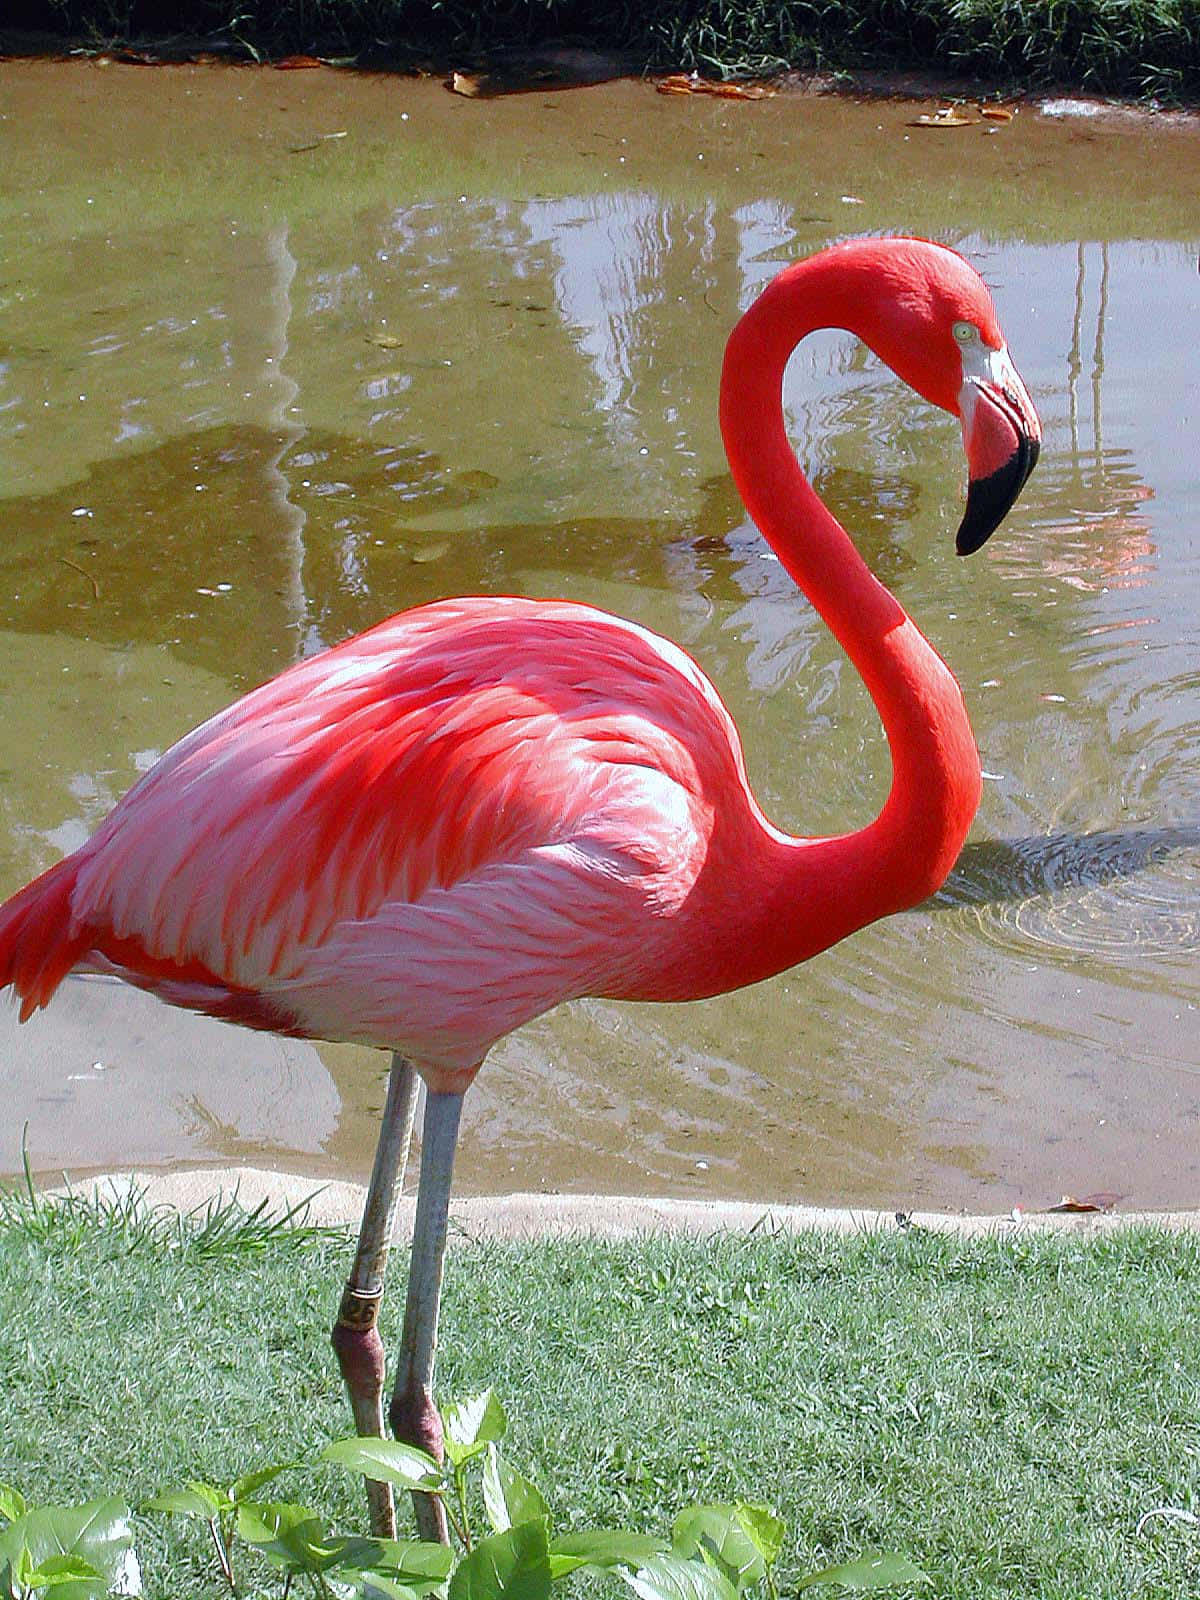 Lassuns Wie Dieser Flamingo Aus Der Masse Hervorstechen Und Ein Statement Setzen!